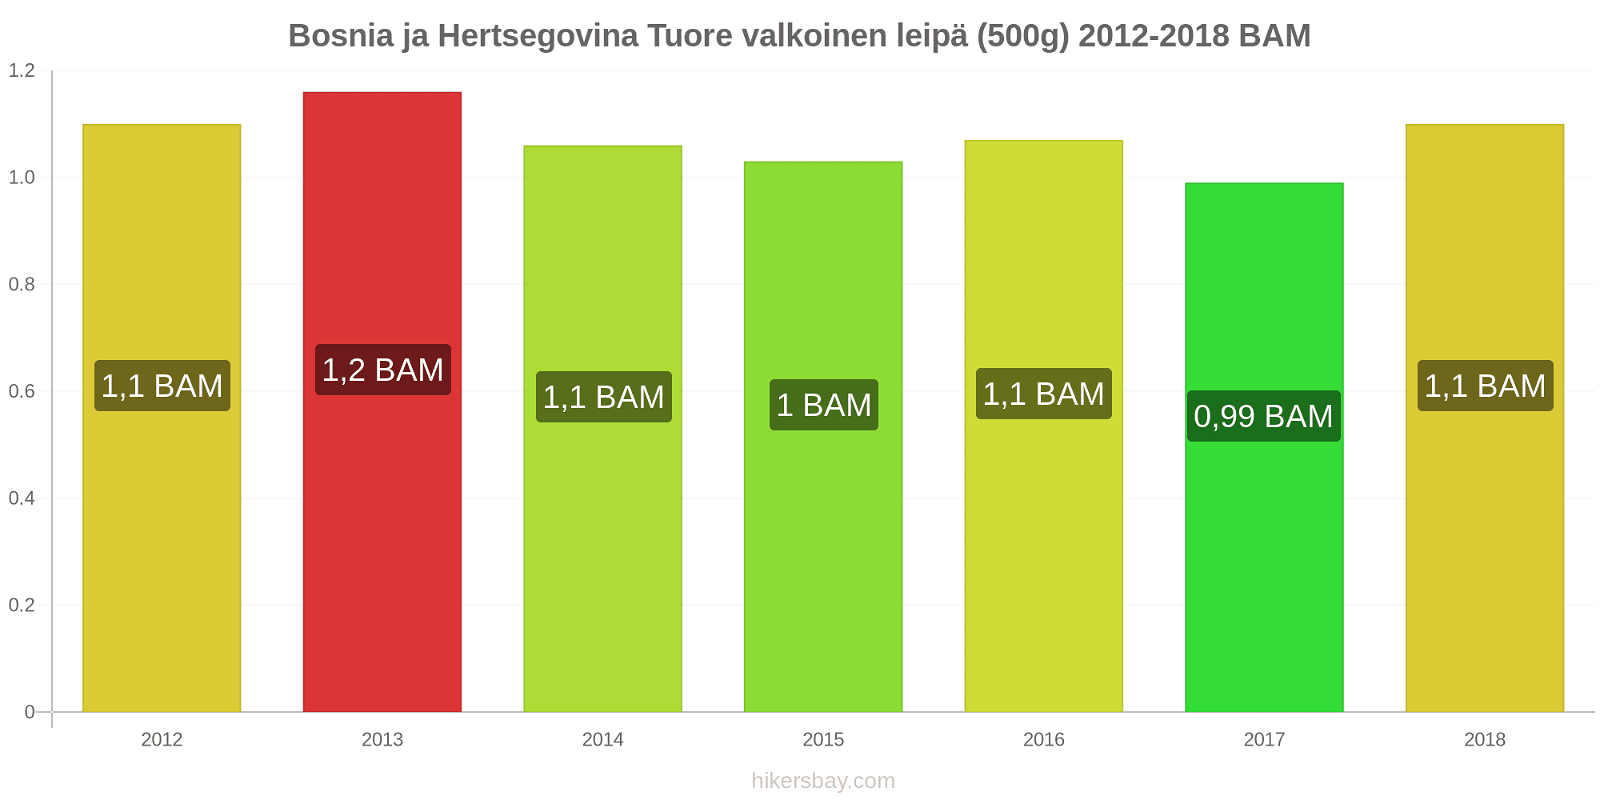 Bosnia ja Hertsegovina hintojen muutokset Tuore valkoinen leipä (500g) hikersbay.com